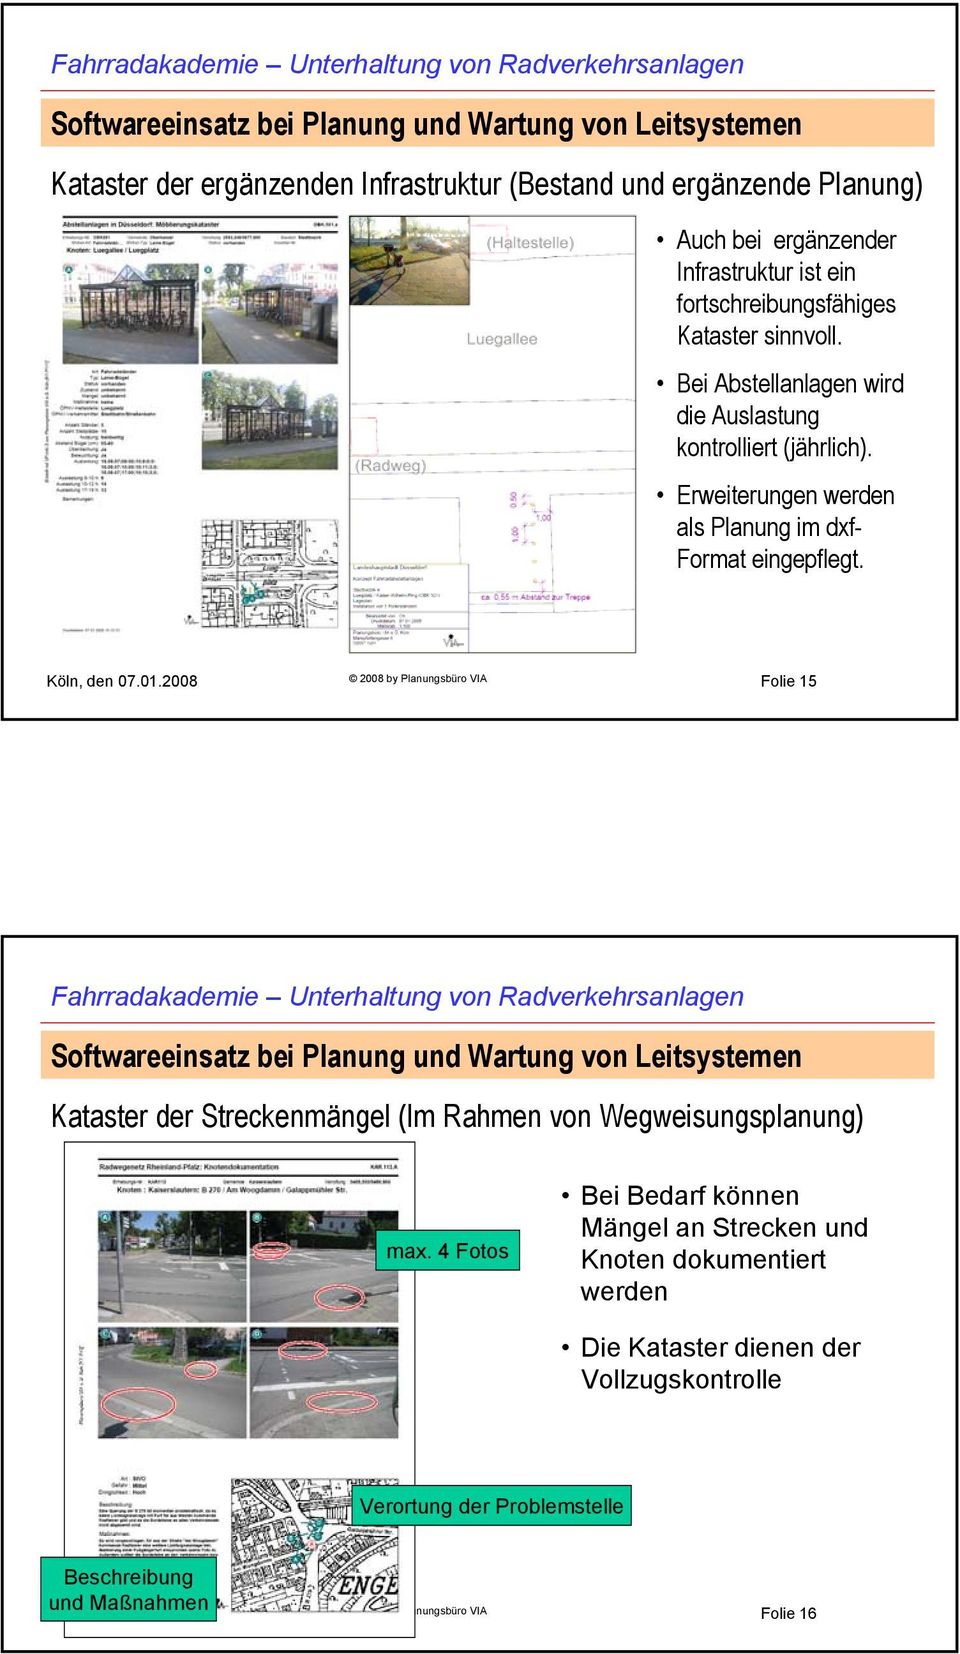 2008 2008 by Planungsbüro VIA Folie 15 Kataster der Streckenmängel (Im Rahmen von Wegweisungsplanung) max.